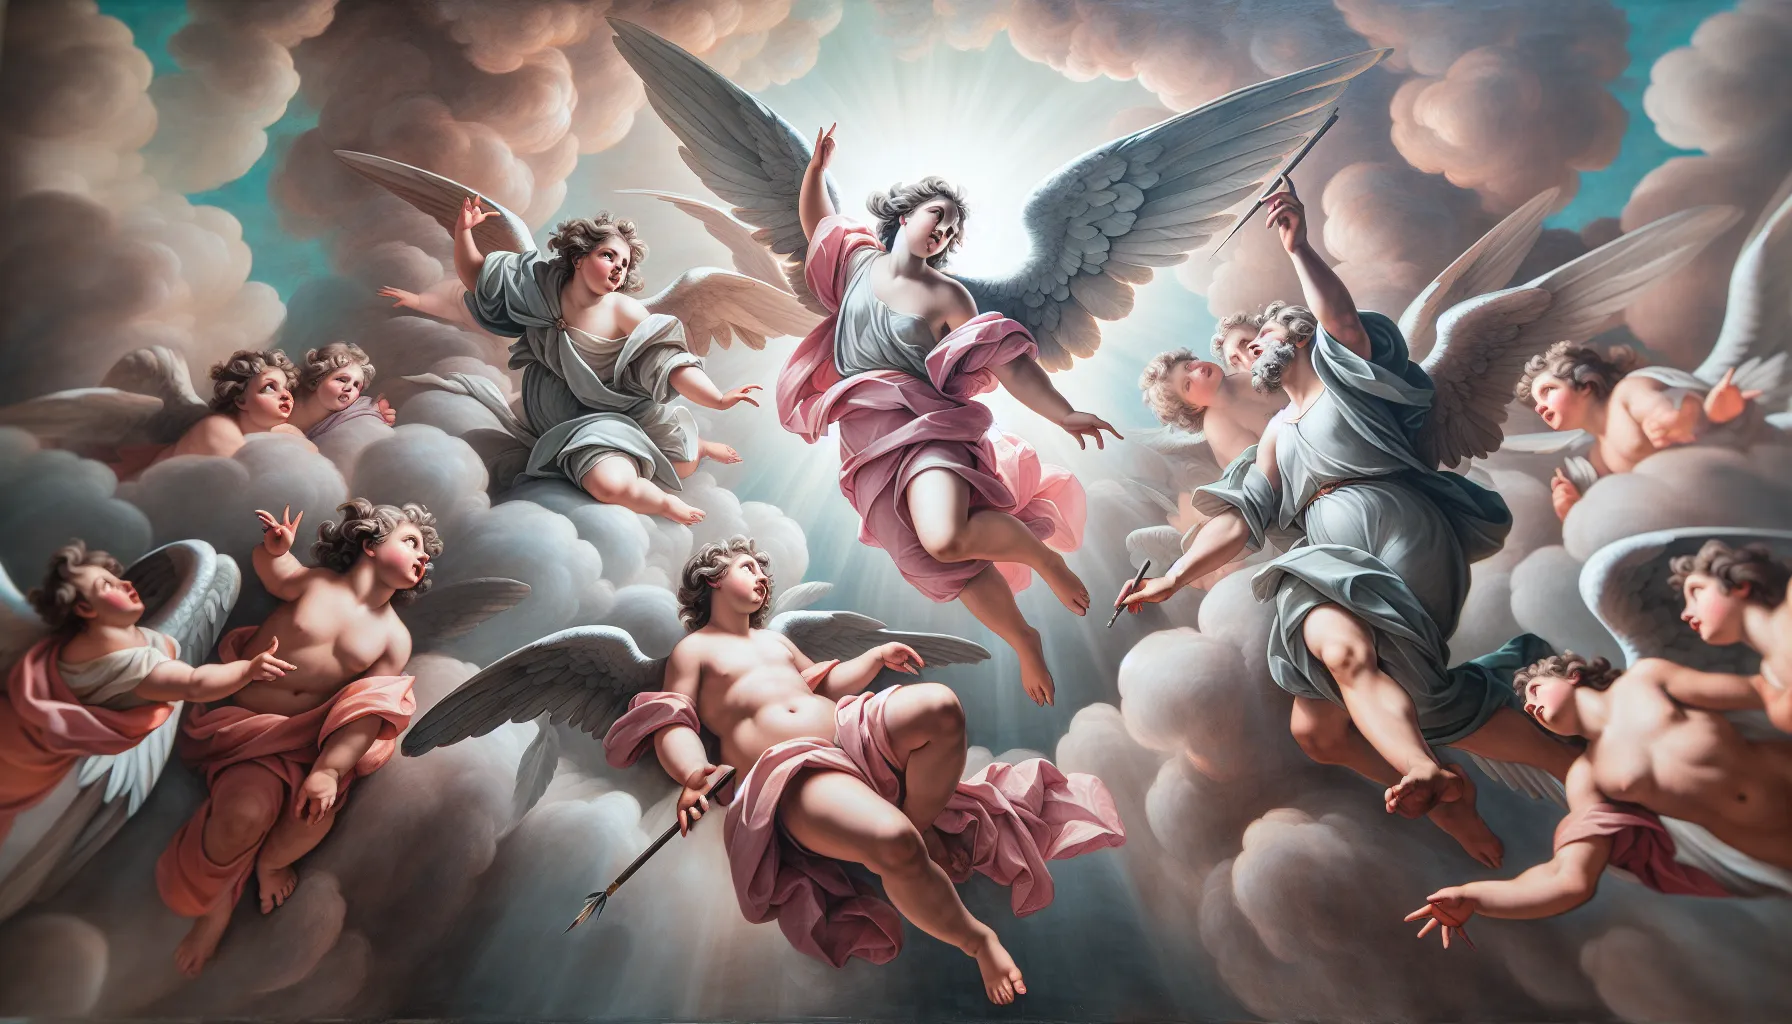 Representación de querubines alados, seres celestiales según la tradición bíblica.